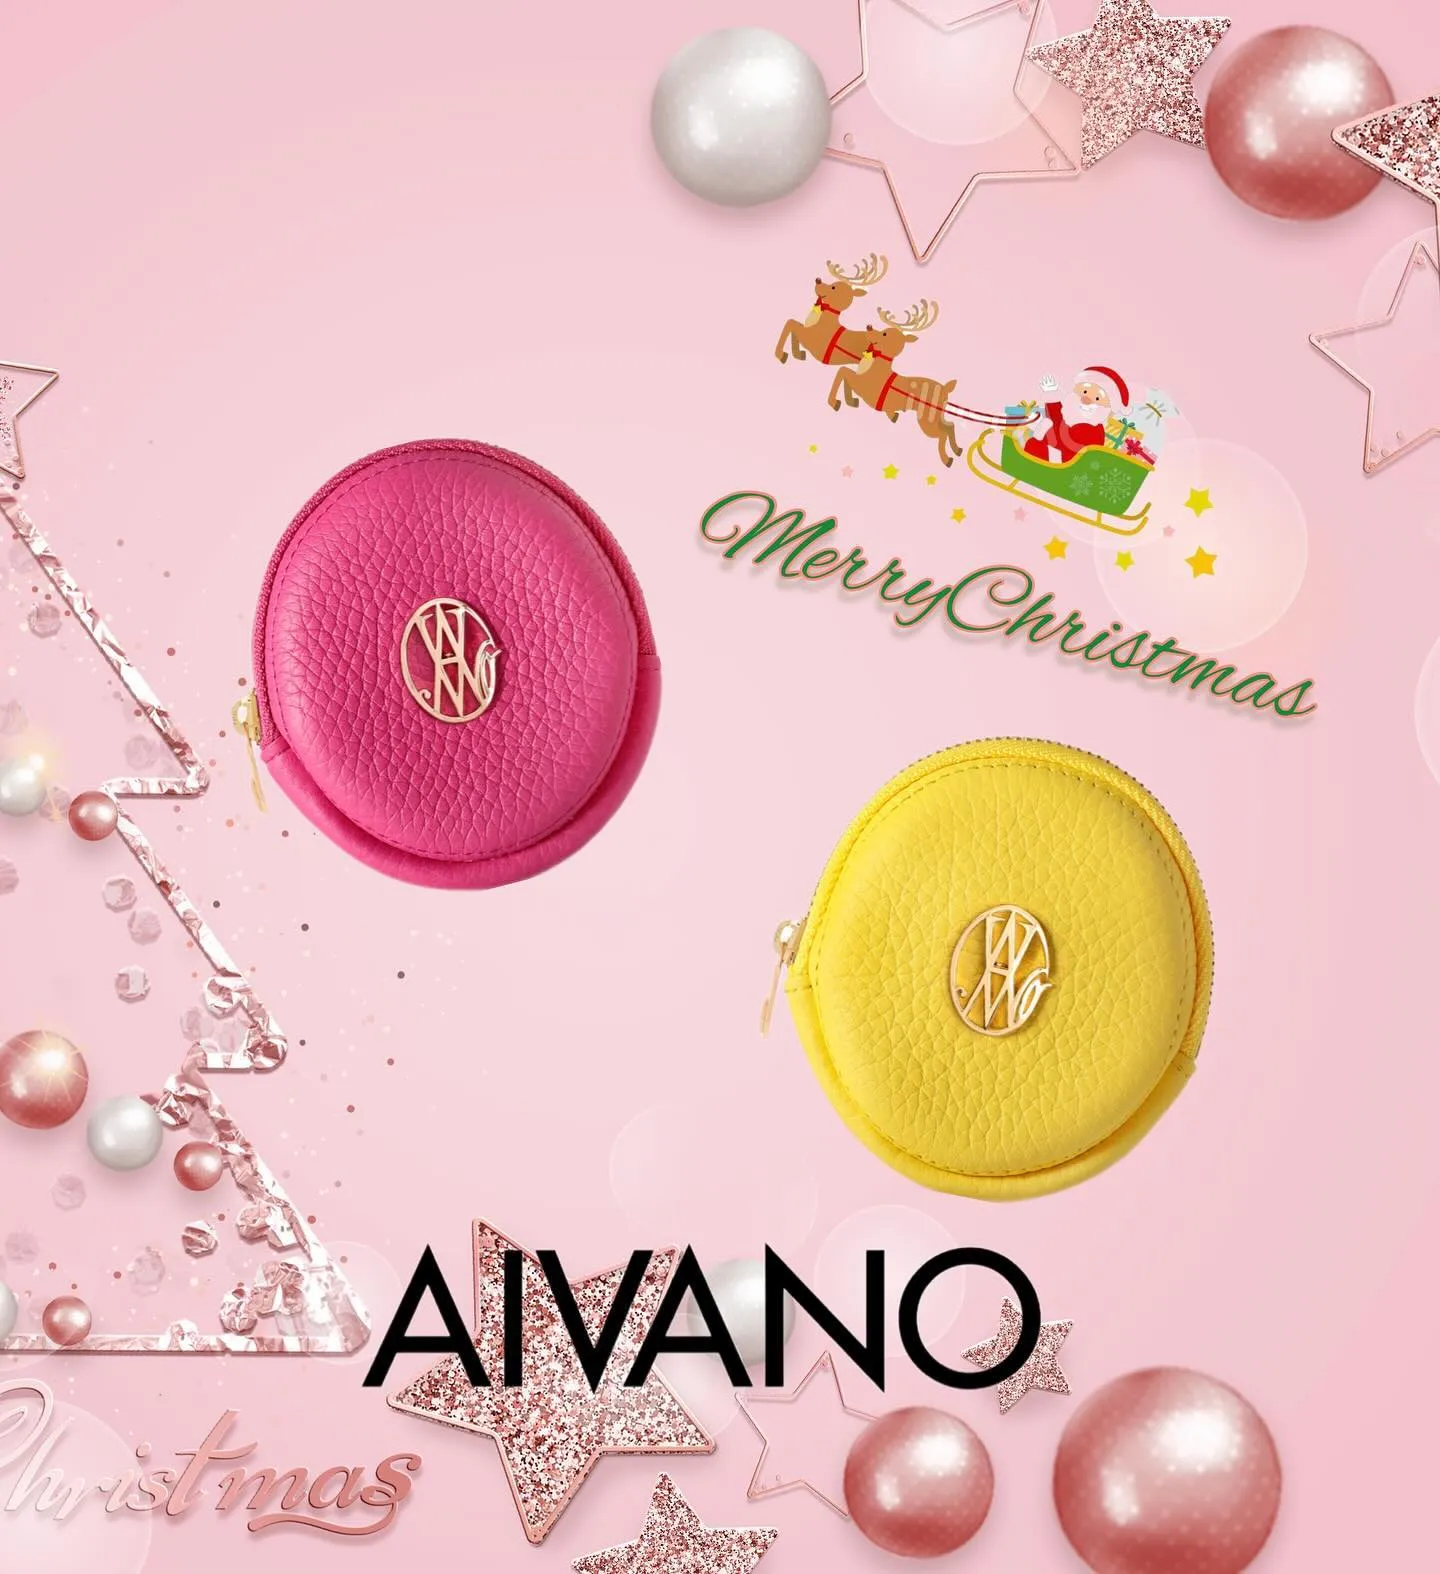 ⌘ AIVANO Christmas gift select...